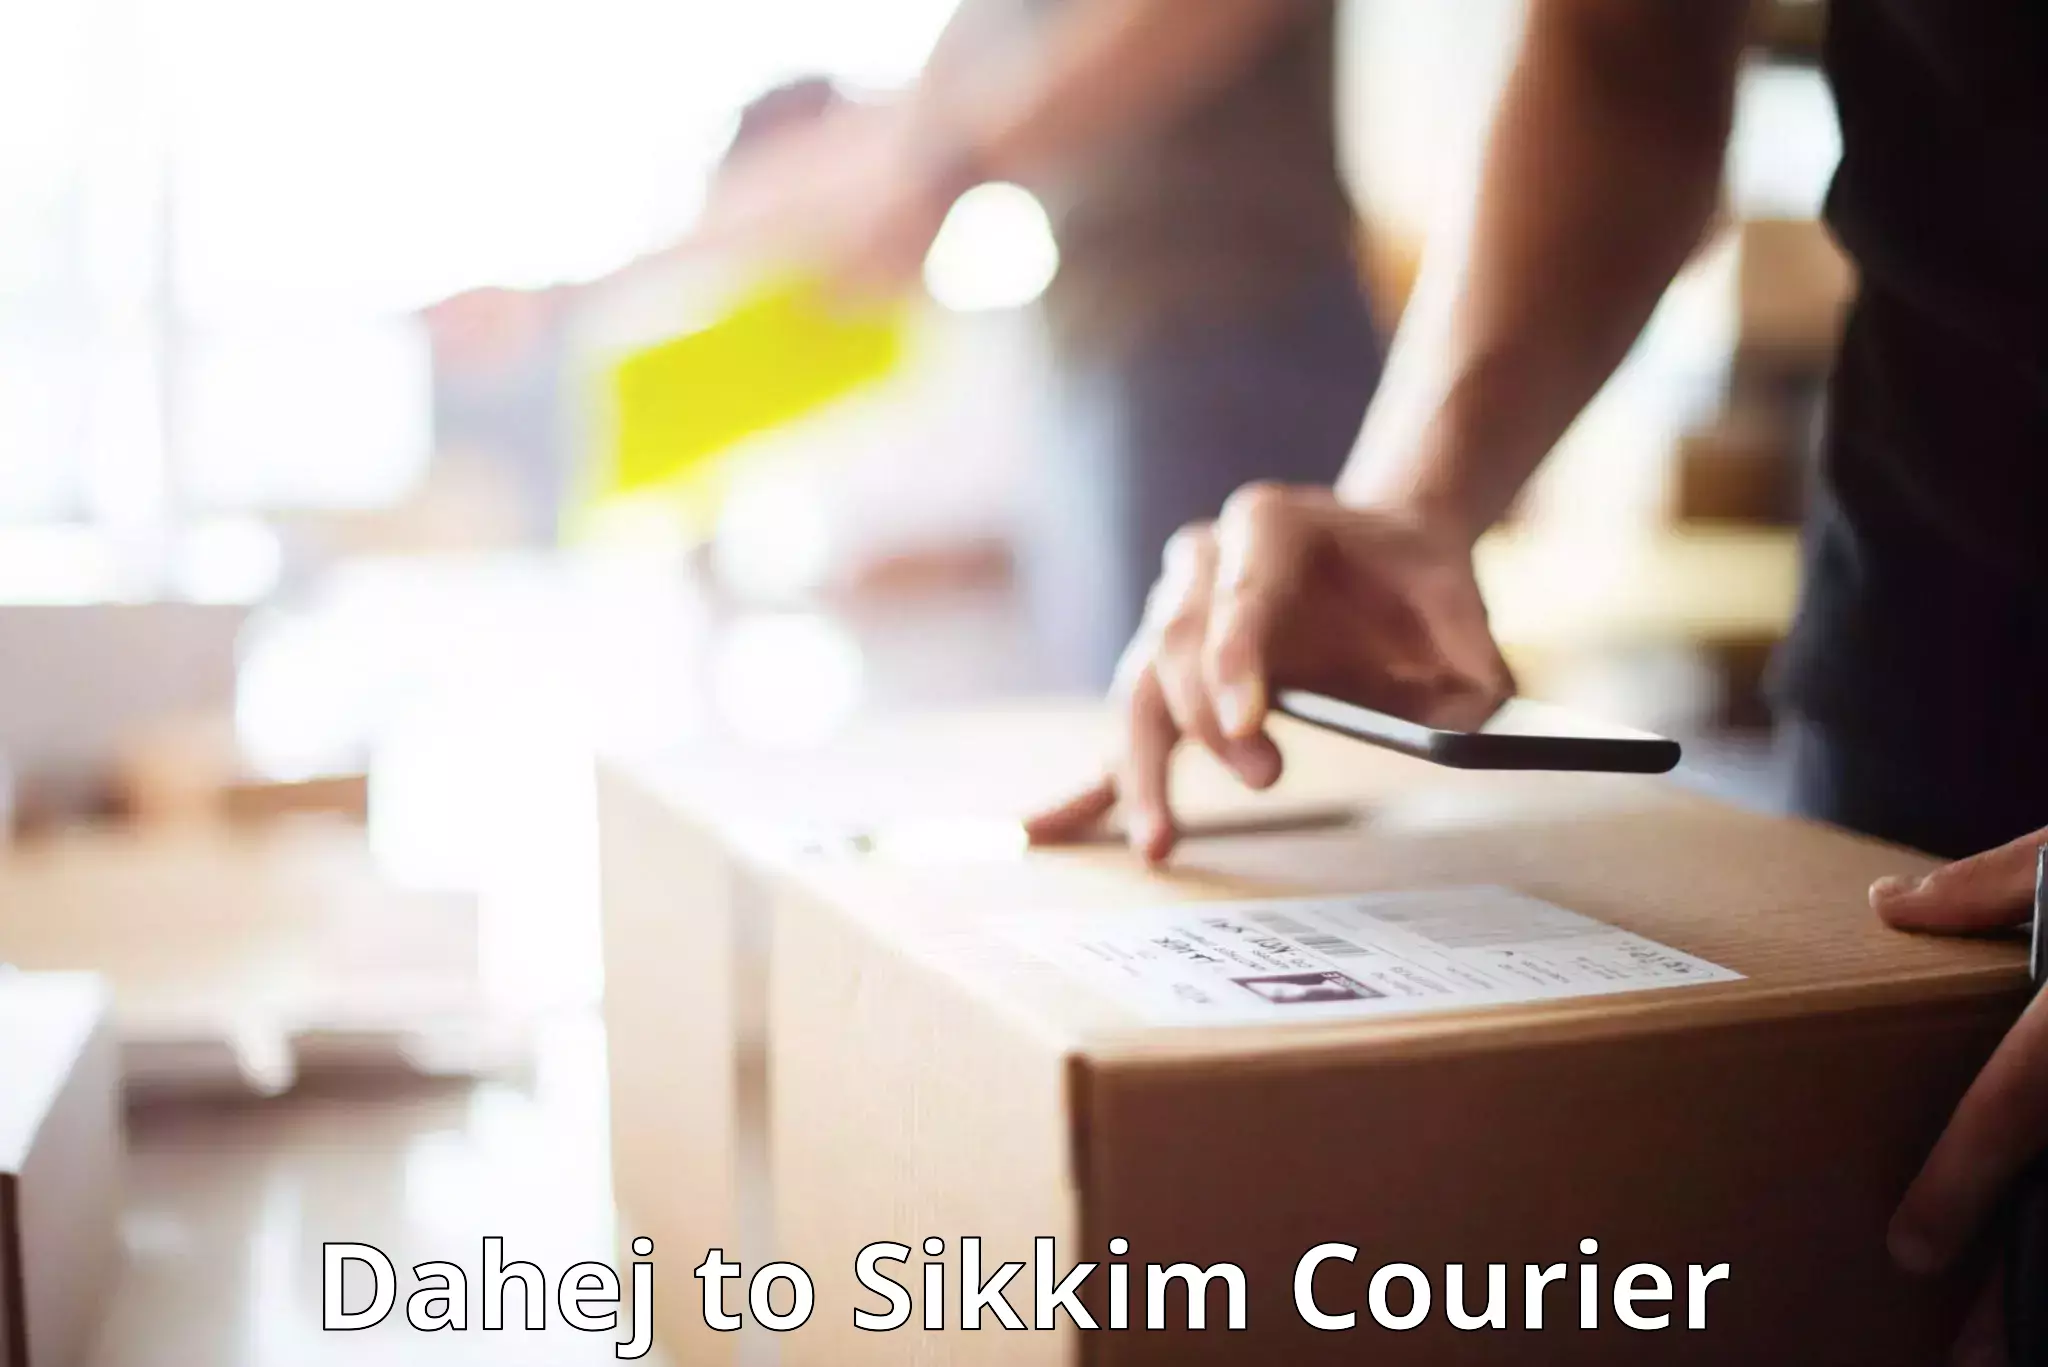 Luggage transport company Dahej to South Sikkim